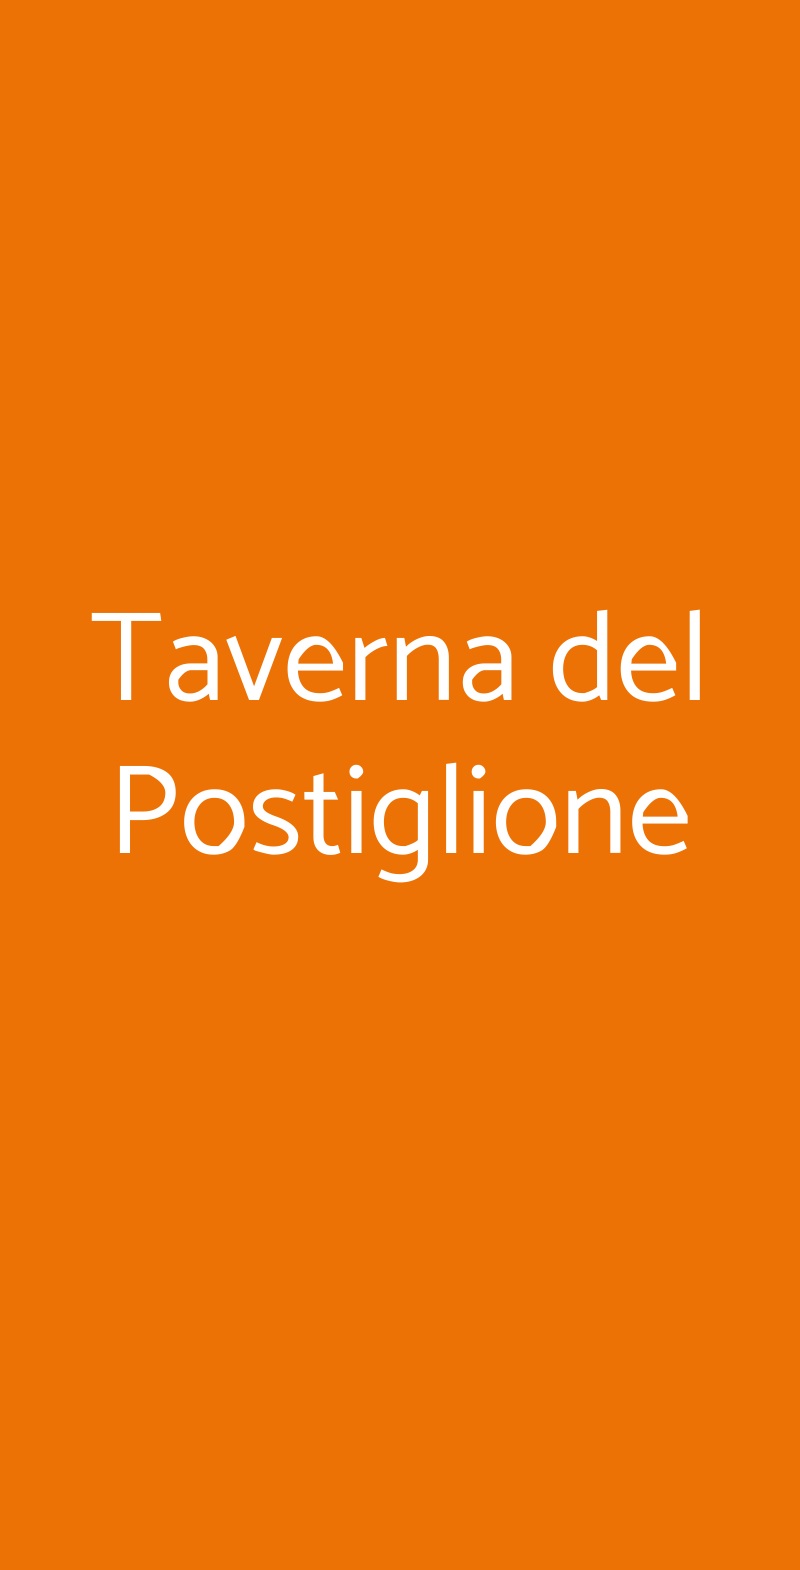 Taverna del Postiglione Bologna menù 1 pagina